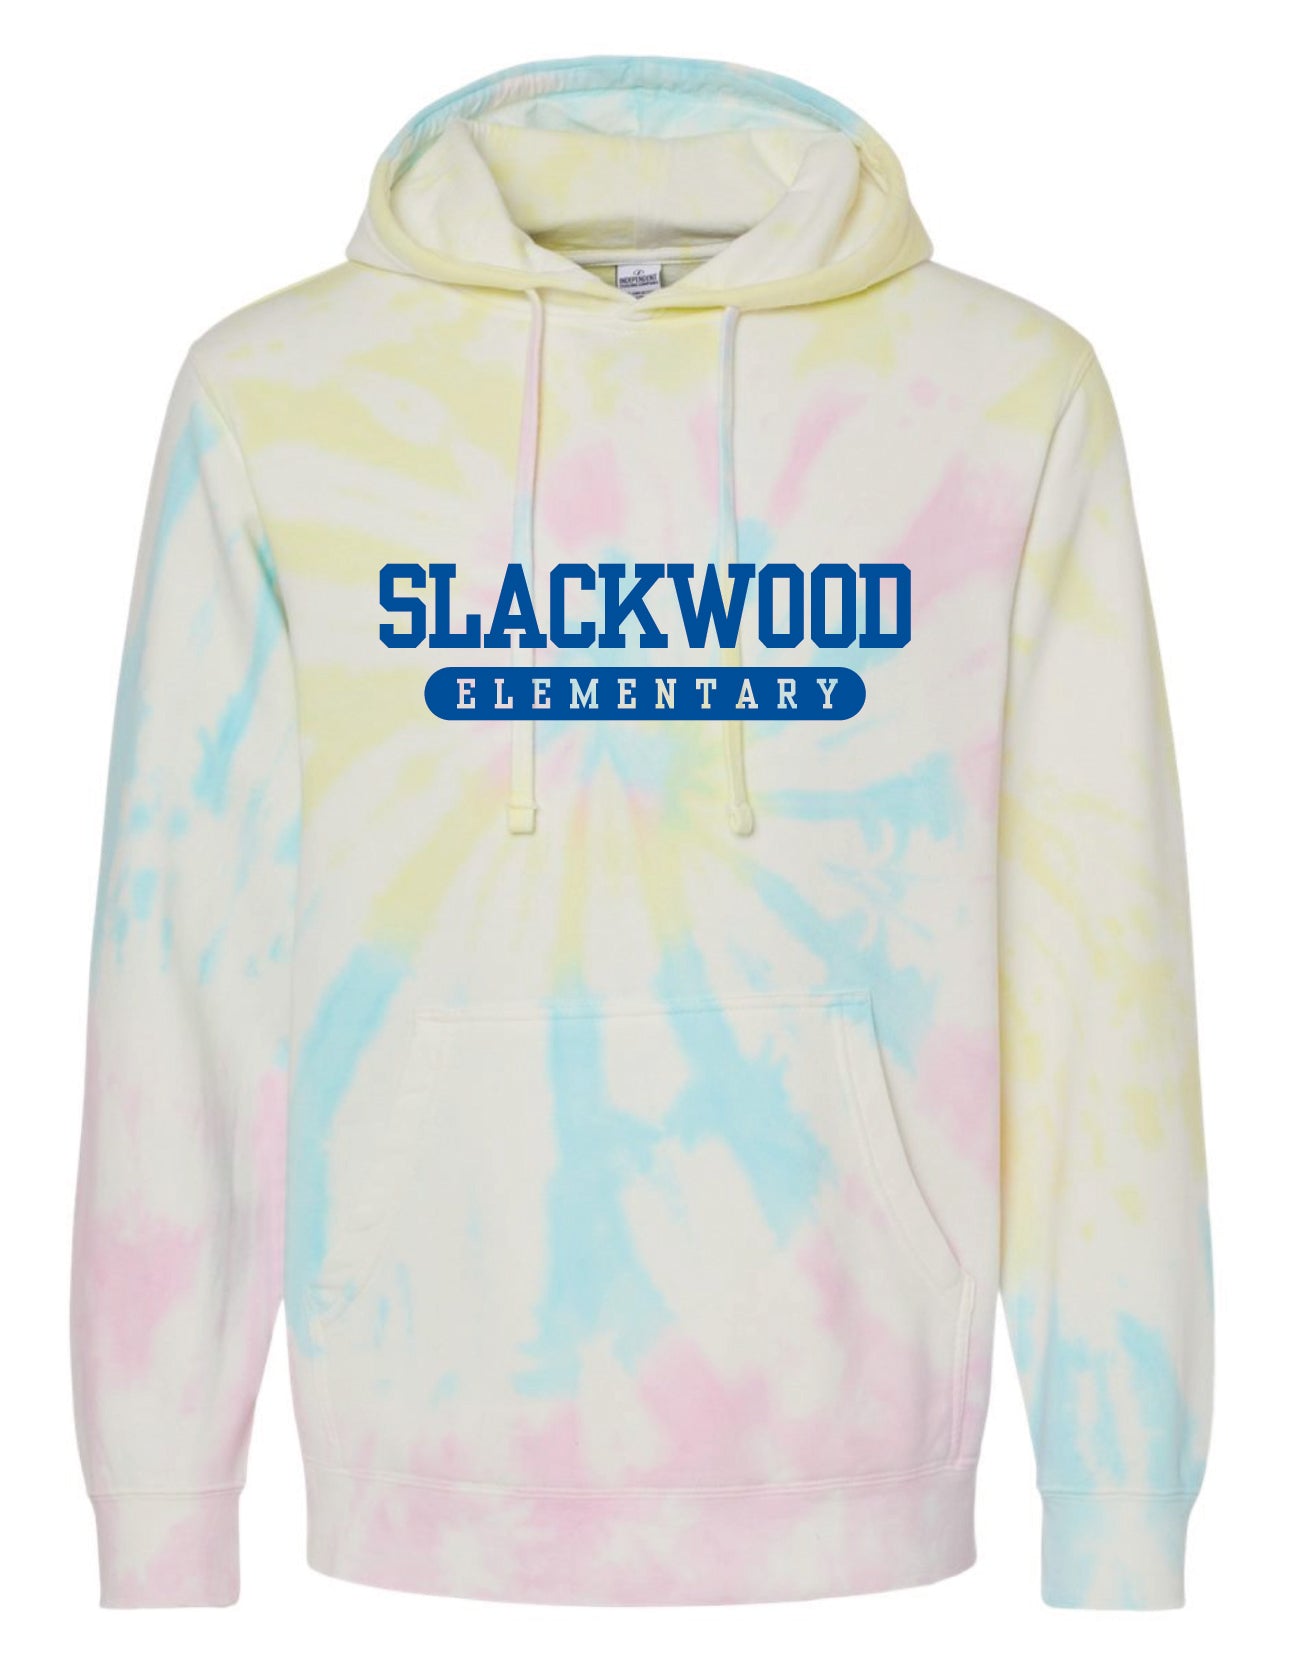 Slackwood Pastel Tie-Dye Hoodie- Adult and Youth